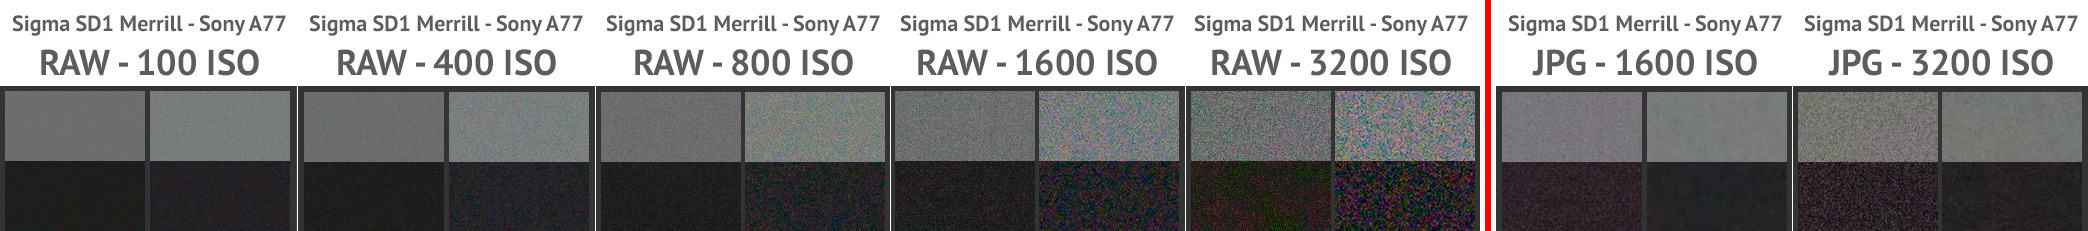 Rumore Sigma SD1 Vs Sony A77